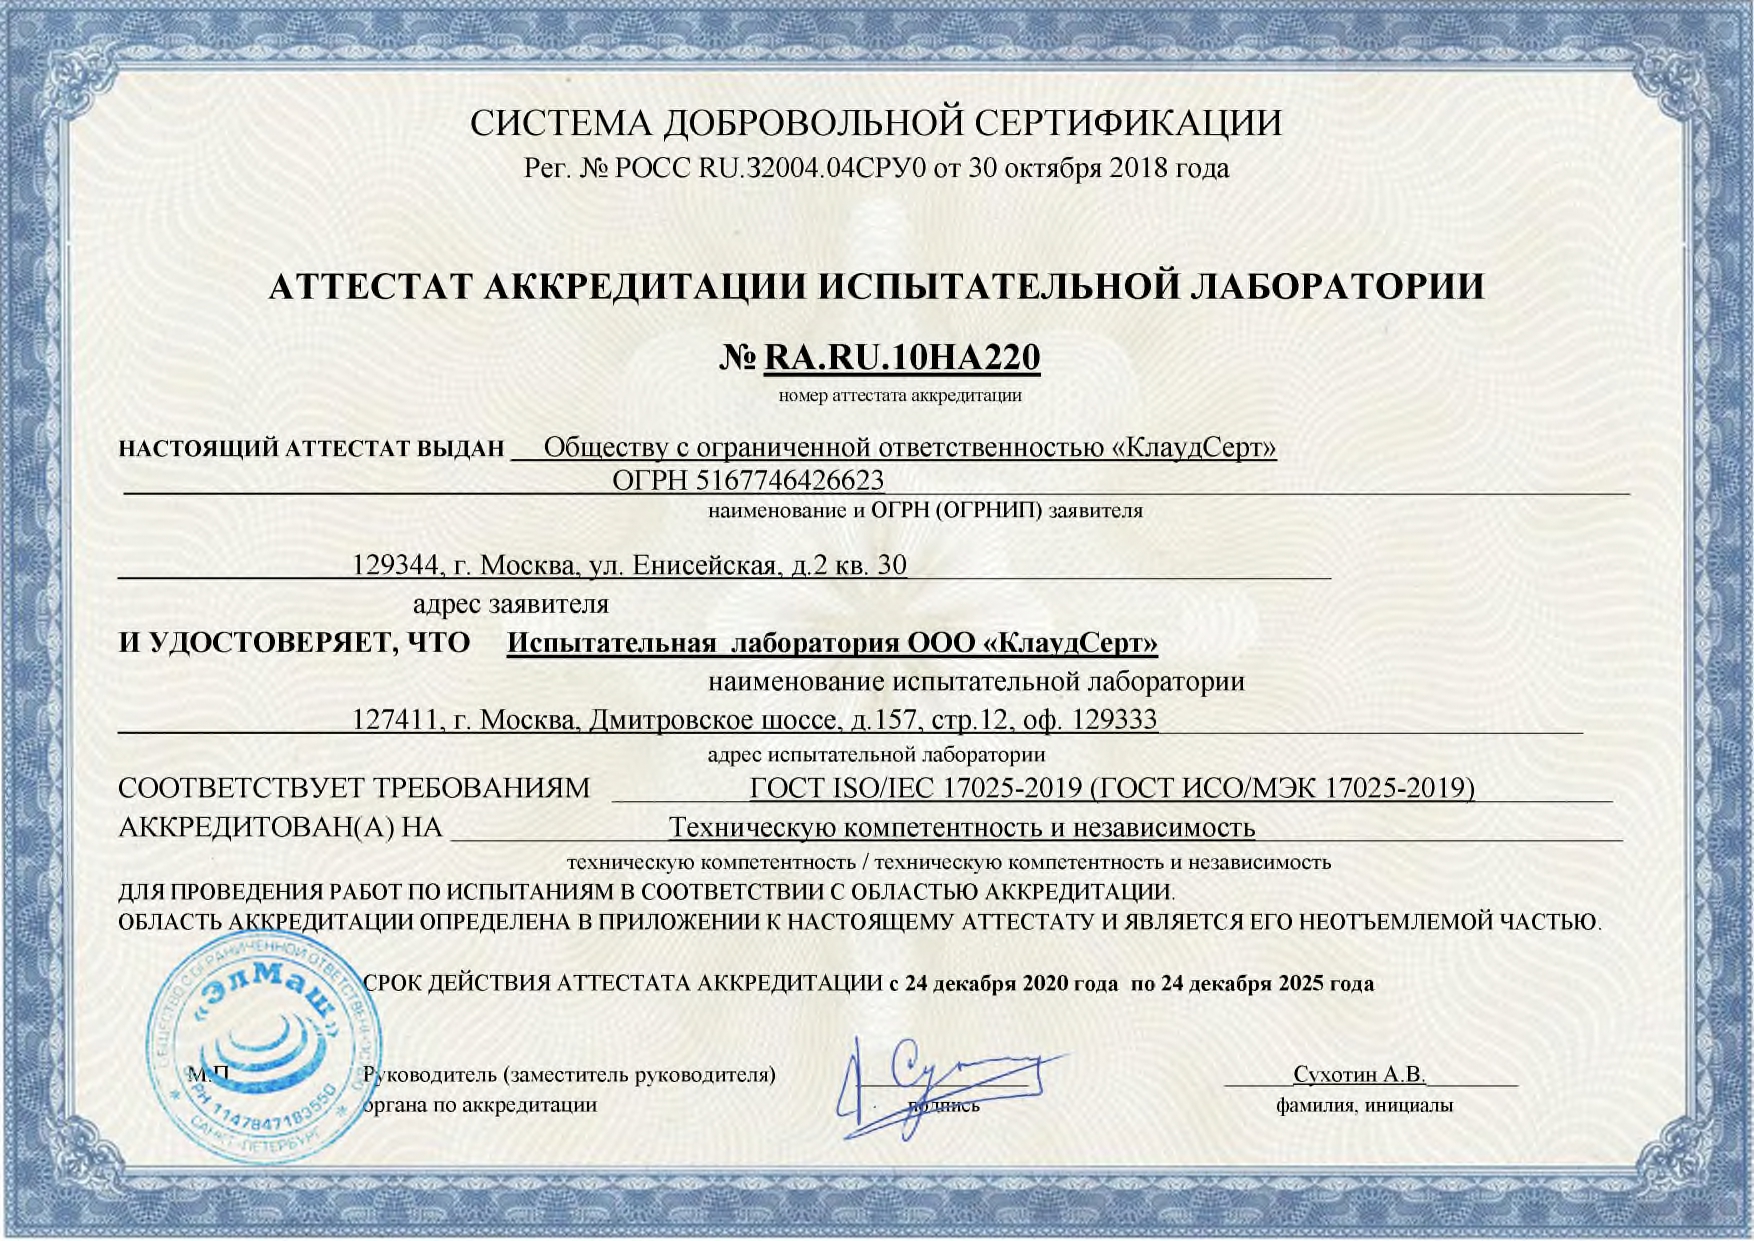 Аттестат аккредитации испытательной лаборатории ООО КлаудСерт